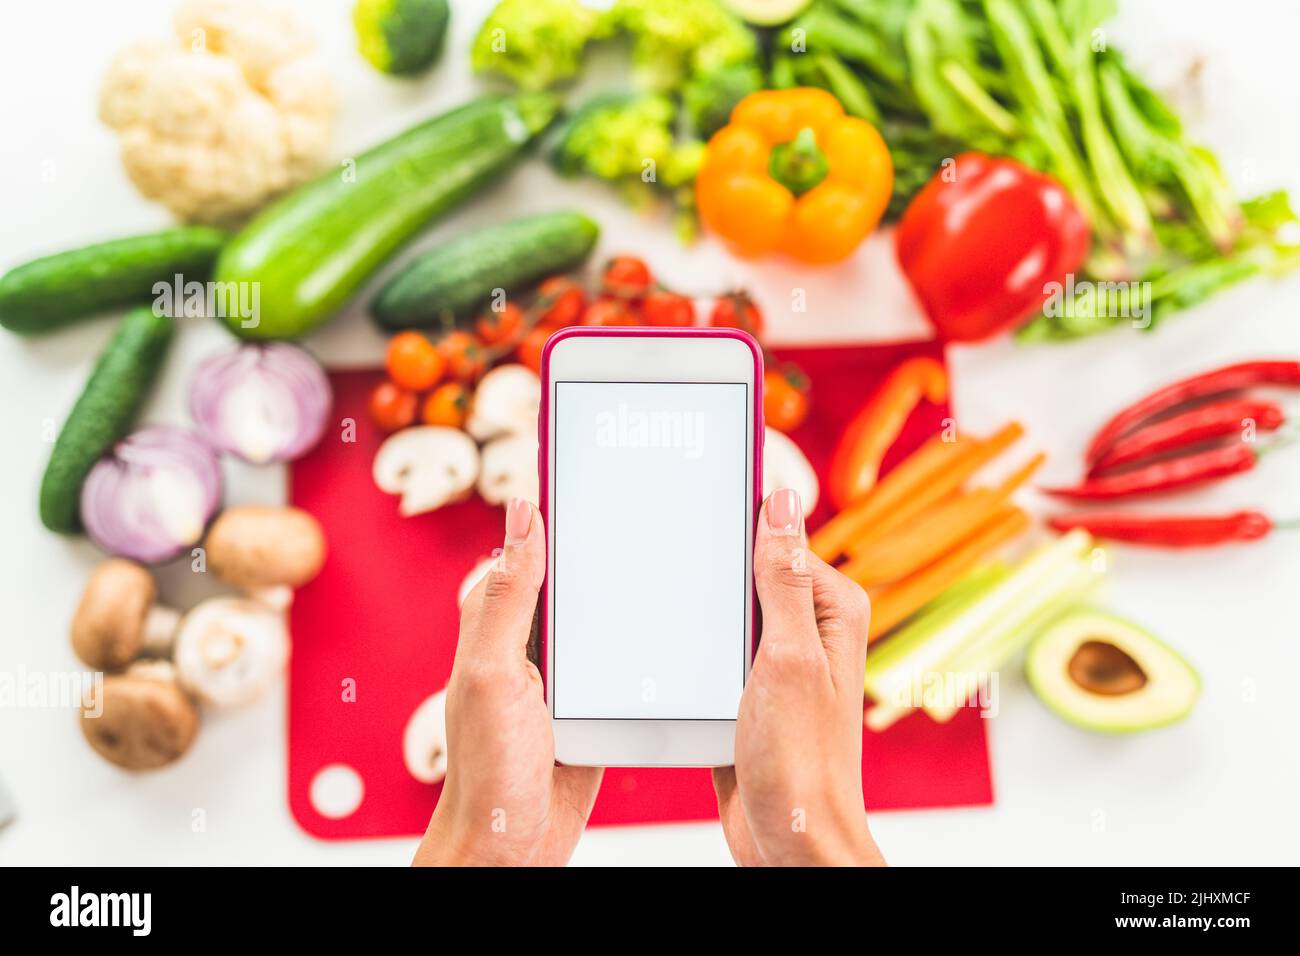 Cercate una ricetta su internet con il telefono cellulare a base di ingredienti vegetali Foto Stock